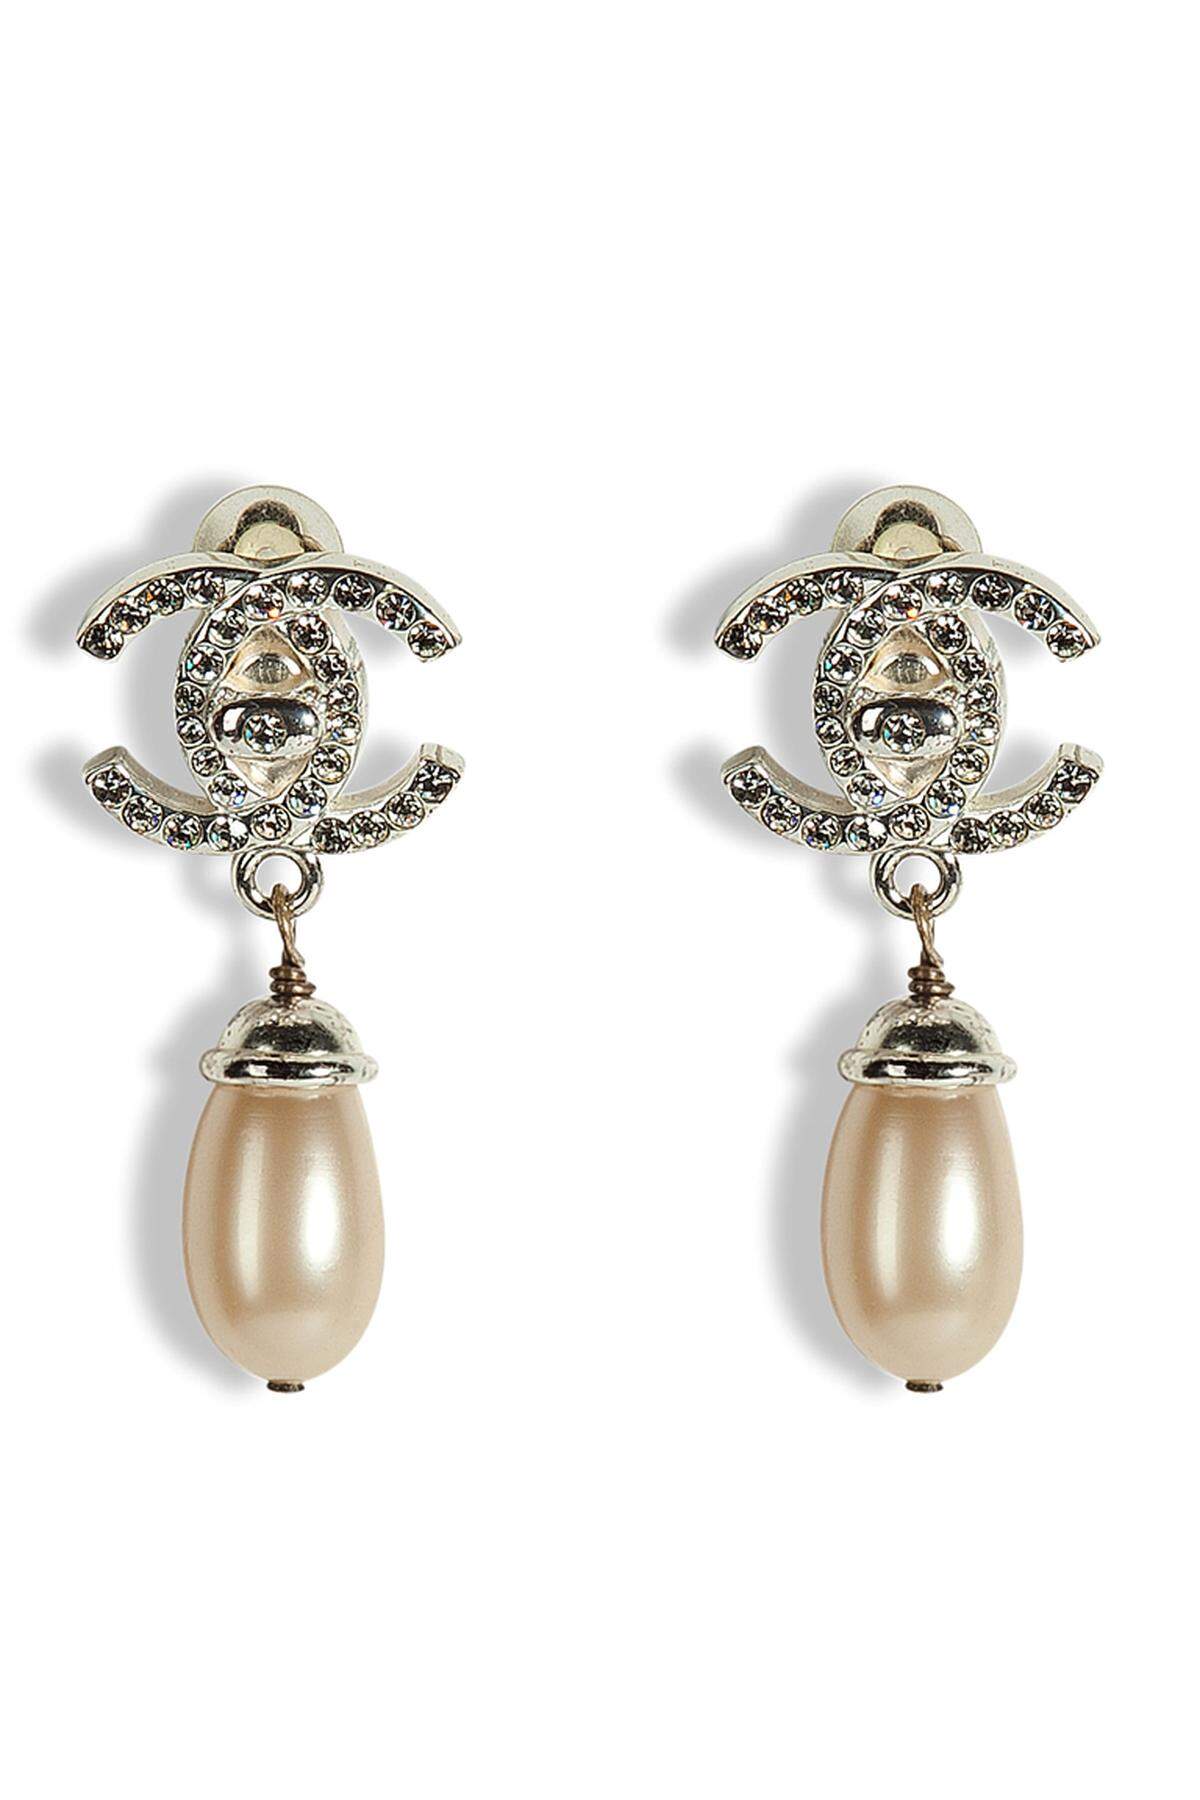 Diese Vintage-Ohrringe von Chanel sind ein zeitloser Klassiker, die jedes Frauenherz höher schlagen lassen. Erhältlich über www.stylebop.com.